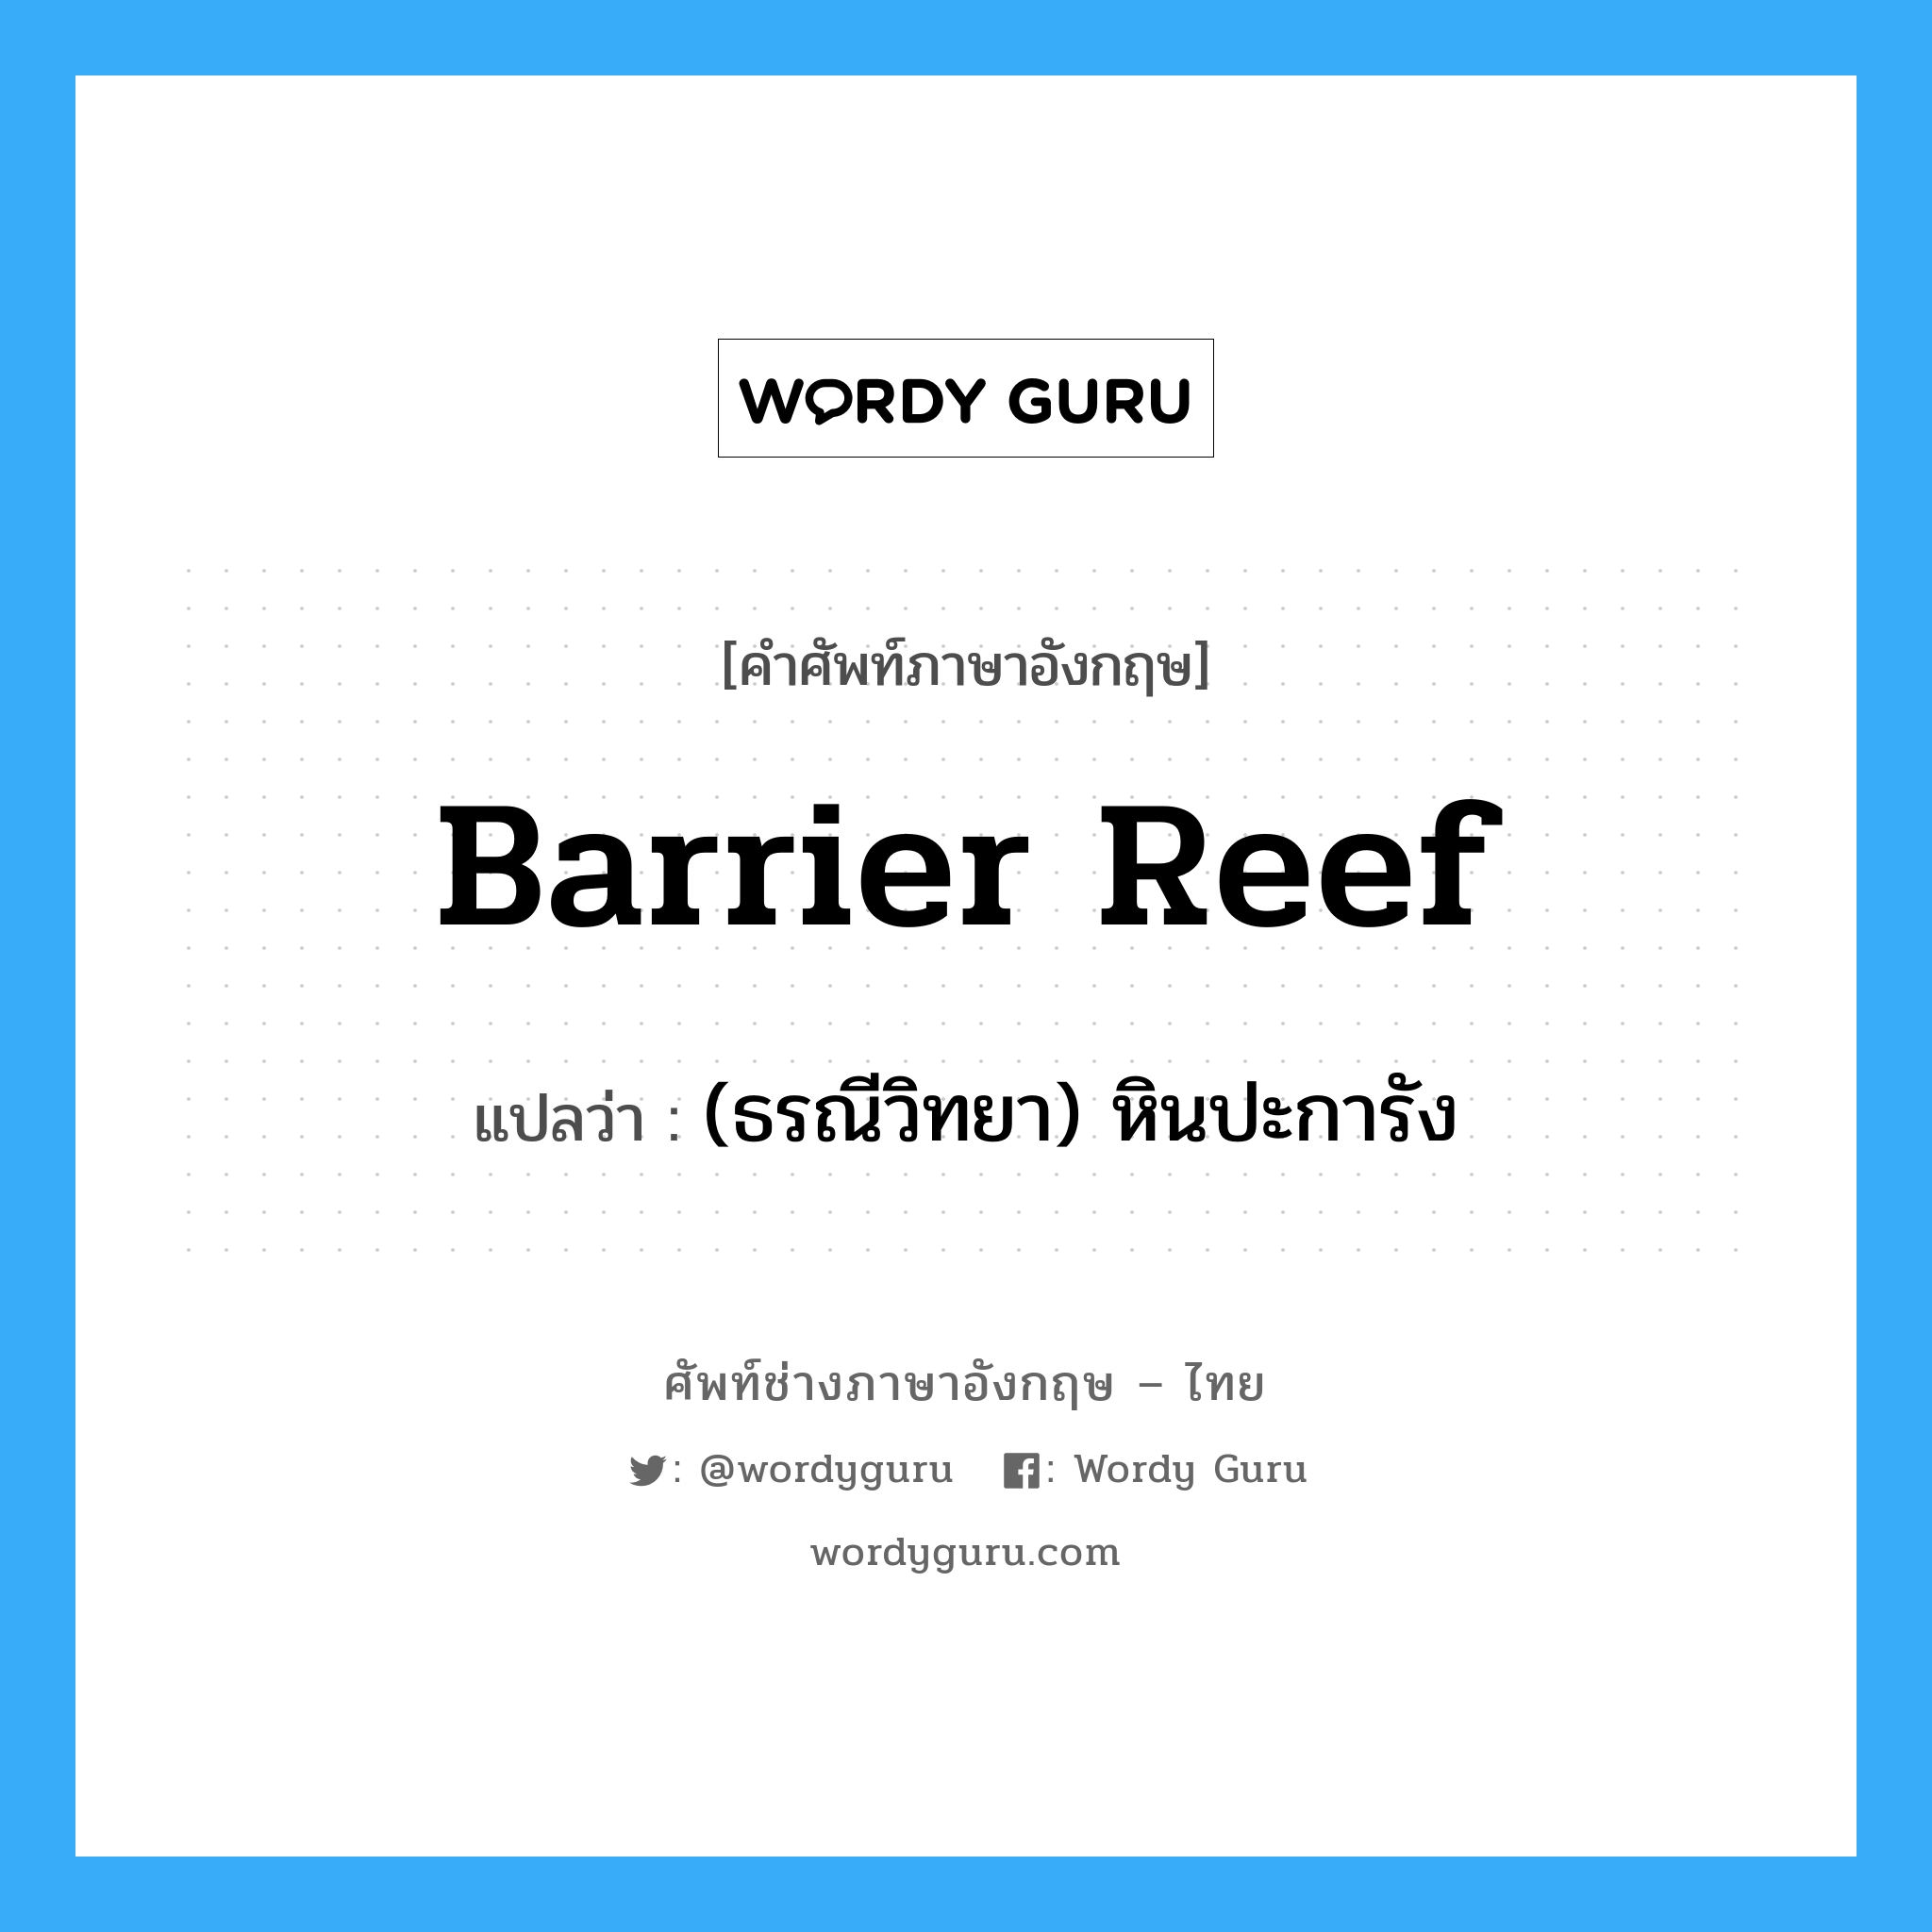 (ธรณีวิทยา) หินปะการัง ภาษาอังกฤษ?, คำศัพท์ช่างภาษาอังกฤษ - ไทย (ธรณีวิทยา) หินปะการัง คำศัพท์ภาษาอังกฤษ (ธรณีวิทยา) หินปะการัง แปลว่า barrier reef